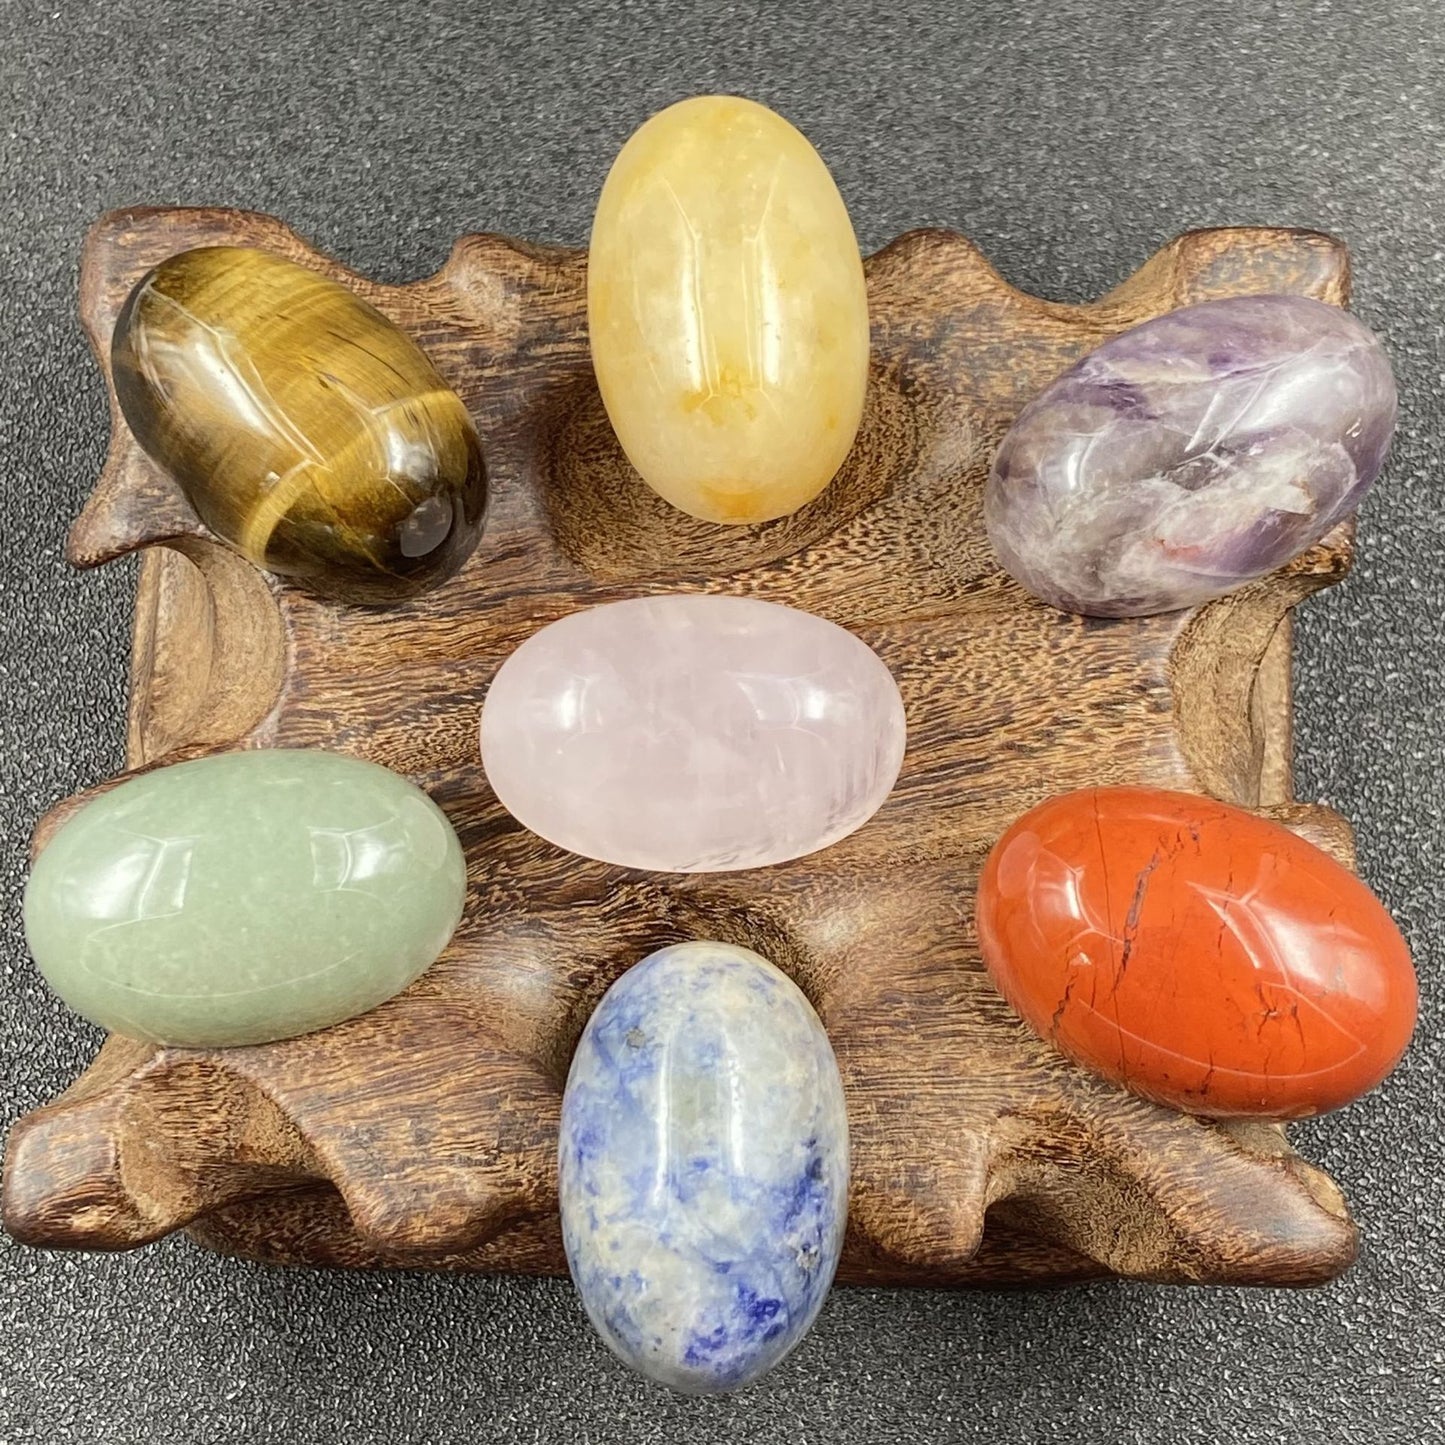 7 Chakra Half Egg Button Yoga Stone Set